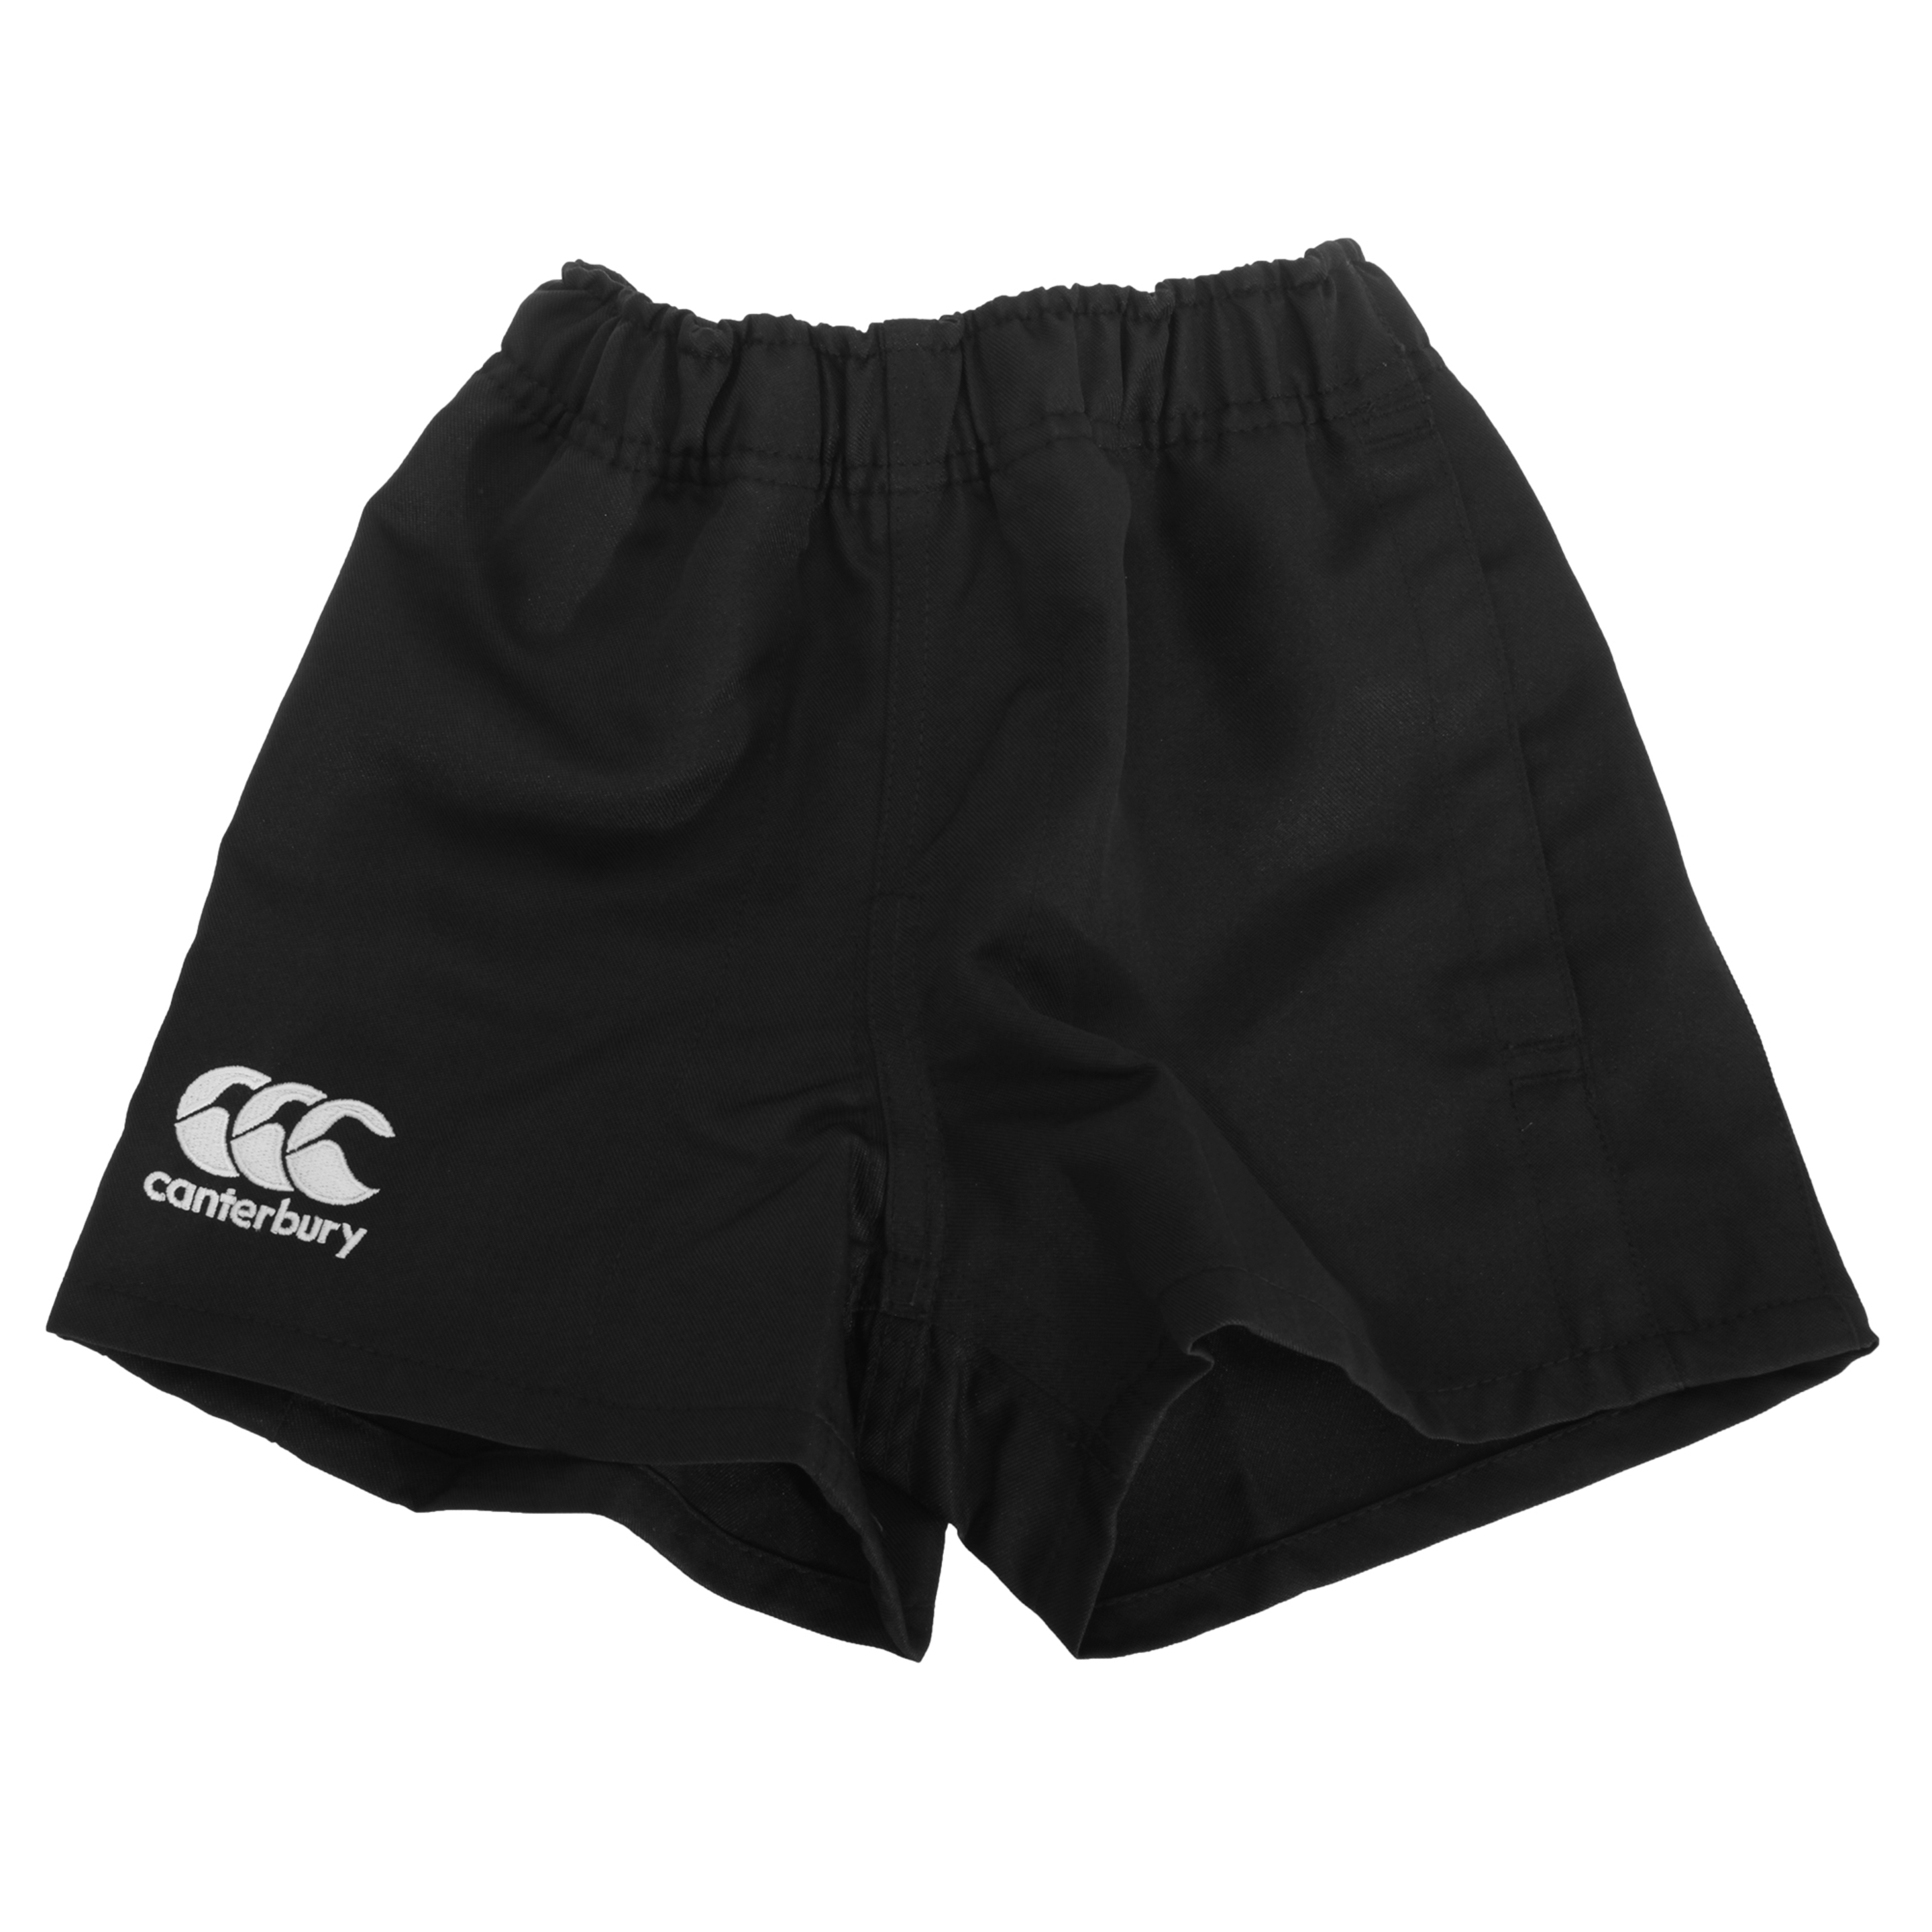 Canterbury - Pantalones Cortos De Deporte Elásticos Modelo Professional - negro - 